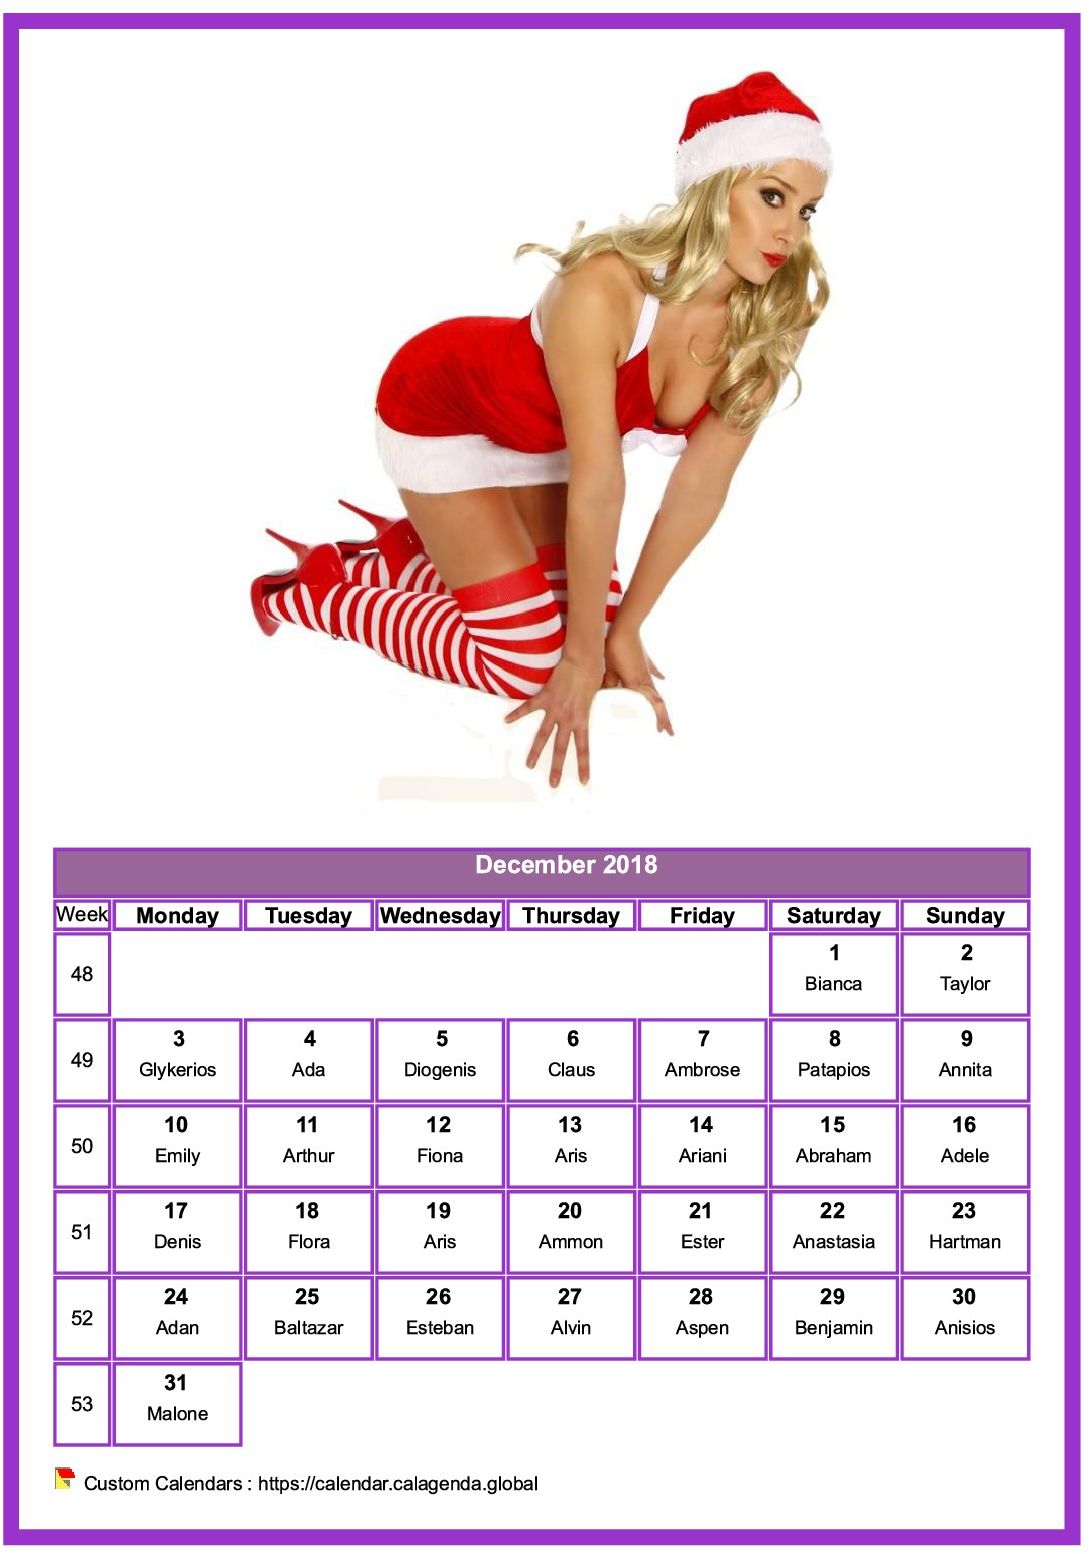 Calendar December 2018 women